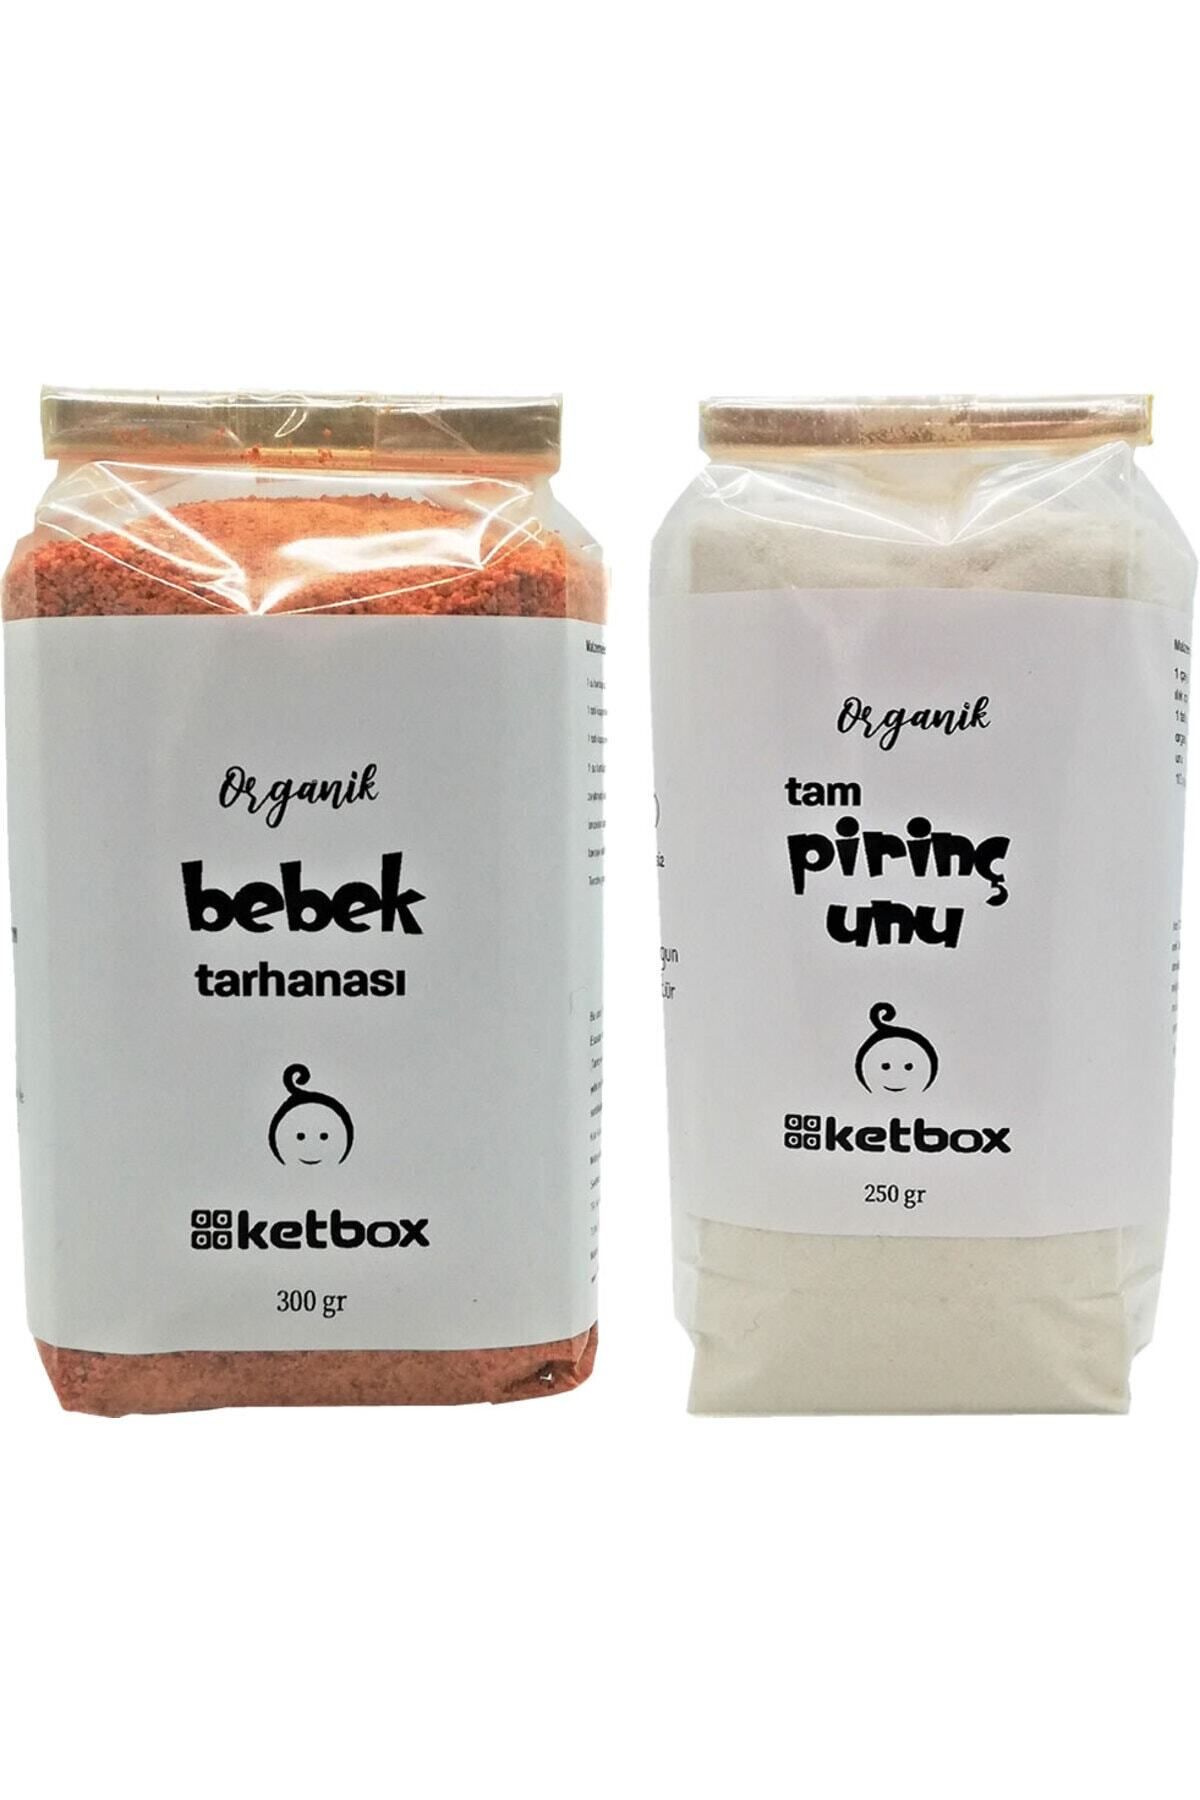 ketbox Organik Sertifikalı Bebek Tarhanası ve Tam Pirinç Unu Ek Gıda Seti + 6 Ay